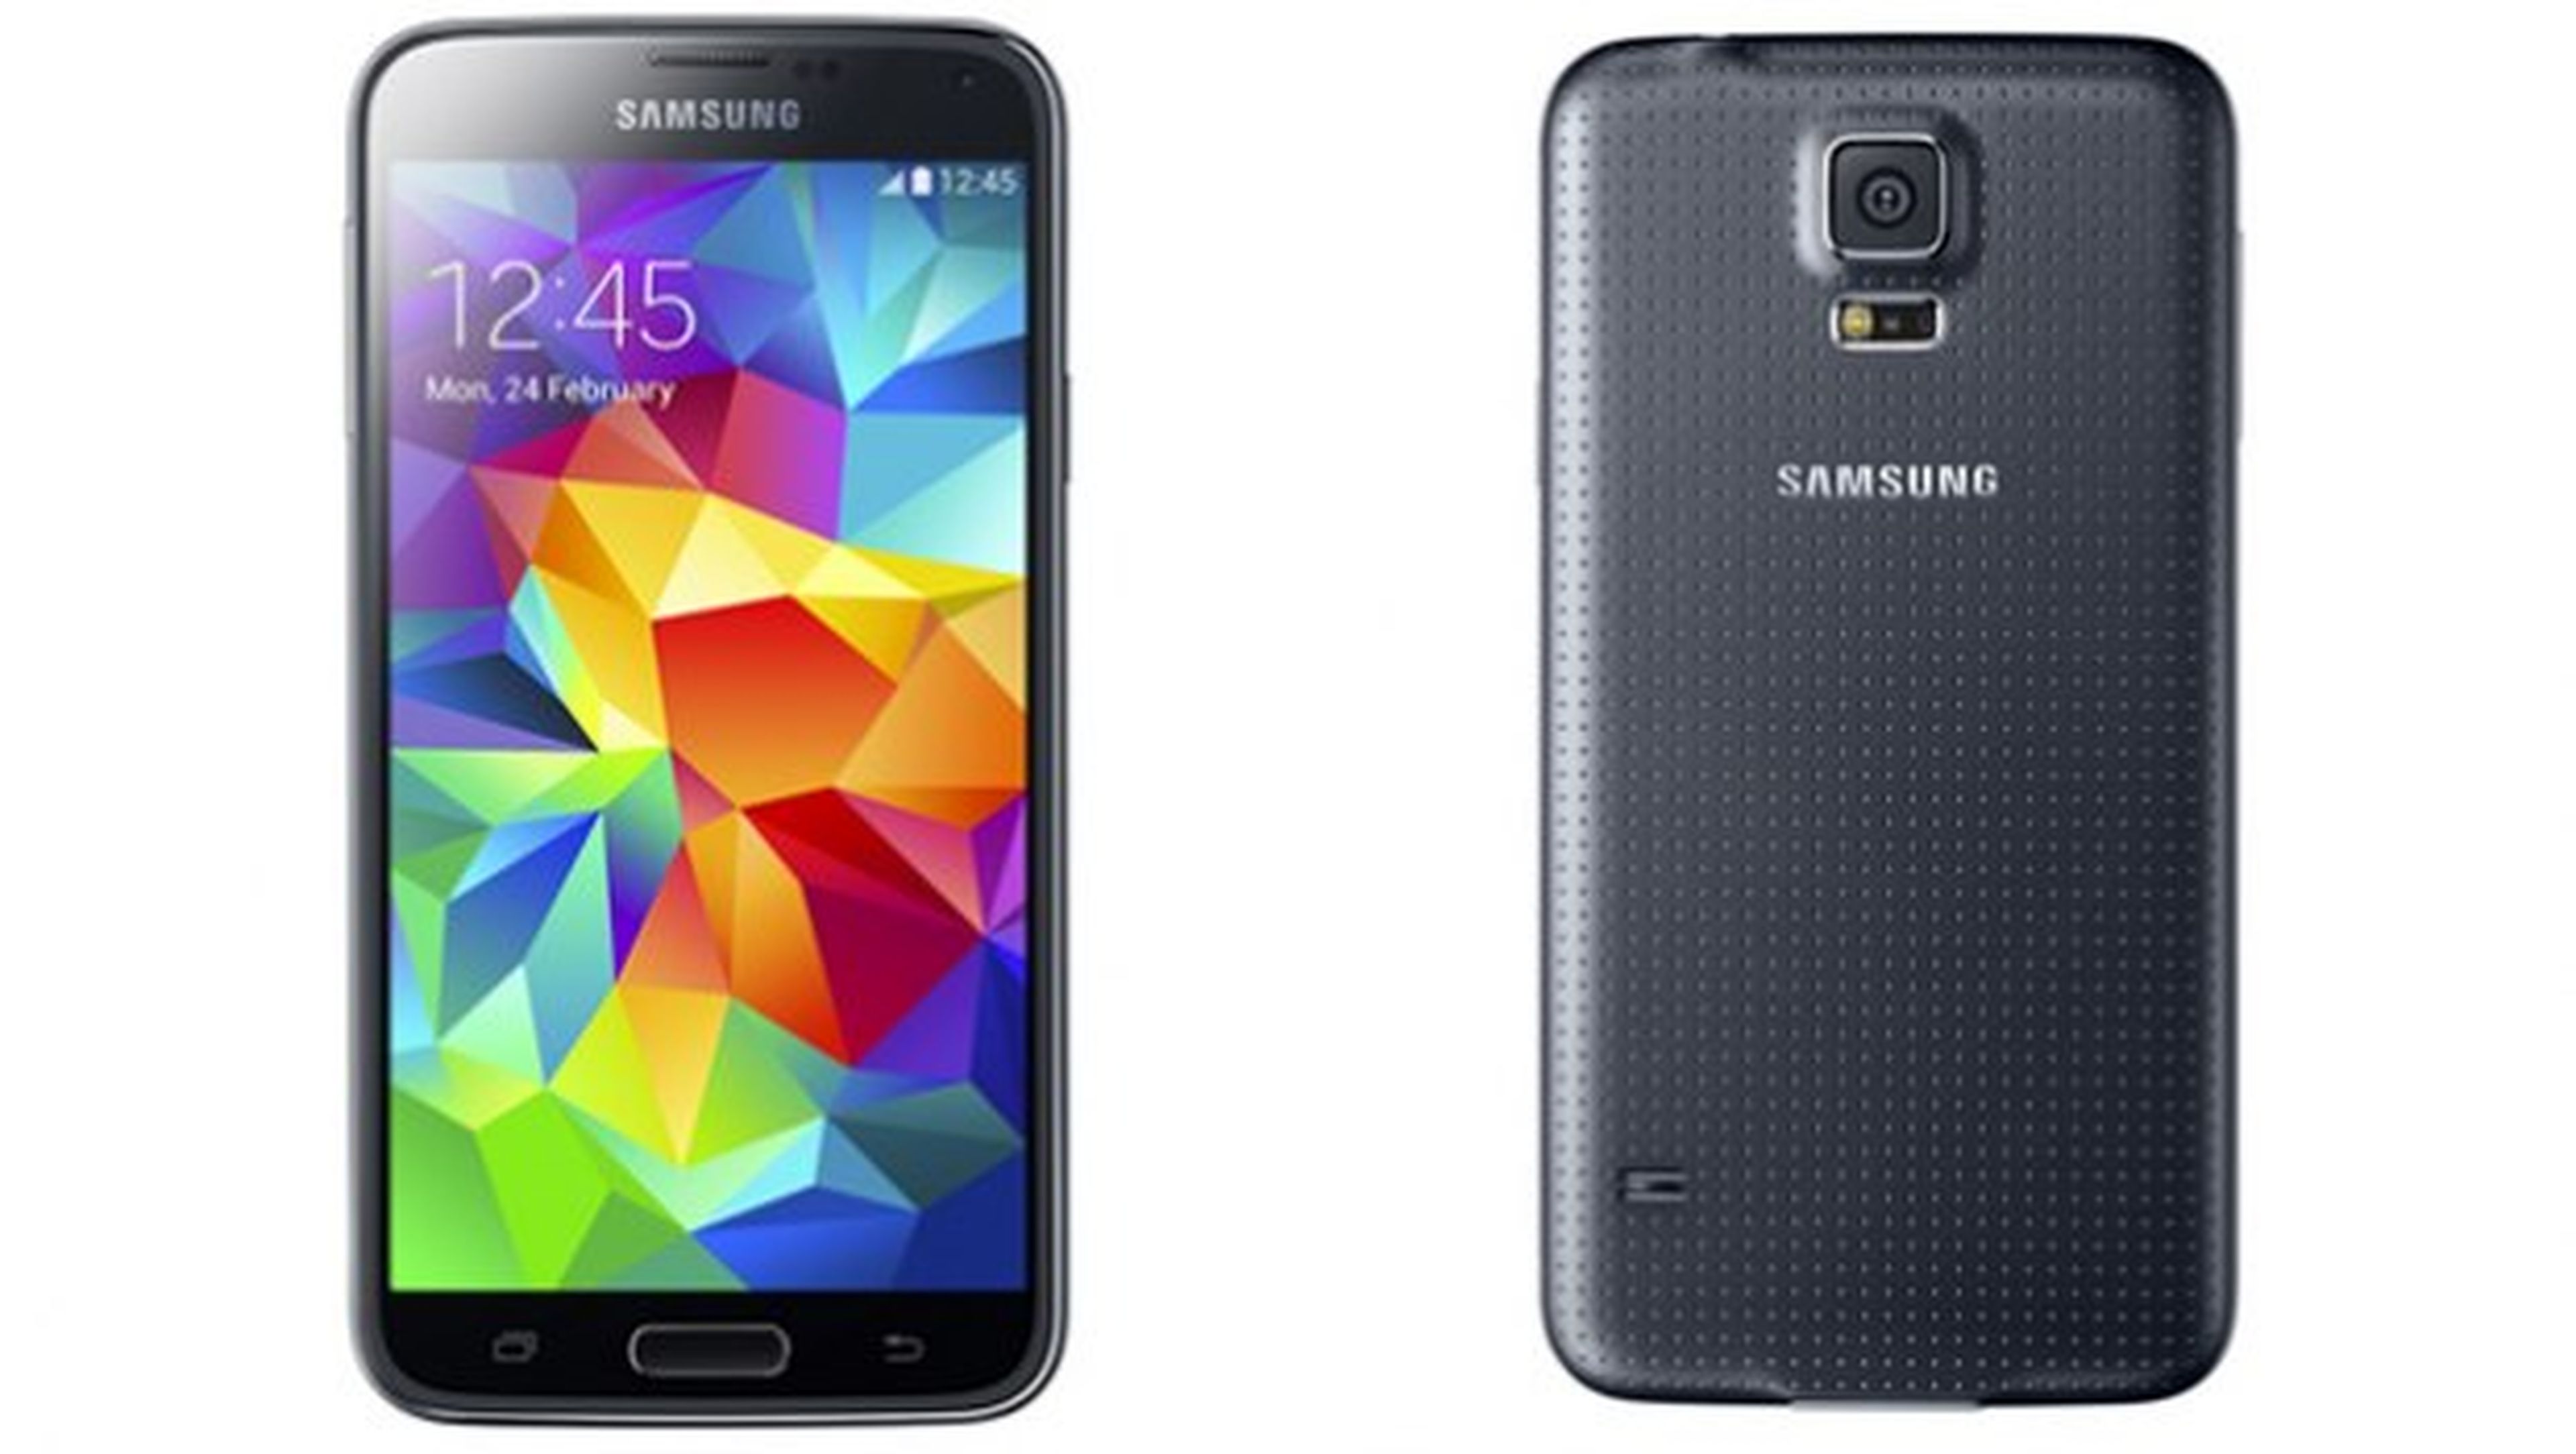 Ya es oficial! Samsung Galaxy S5 presentado en el MWC 2014 | Computer Hoy